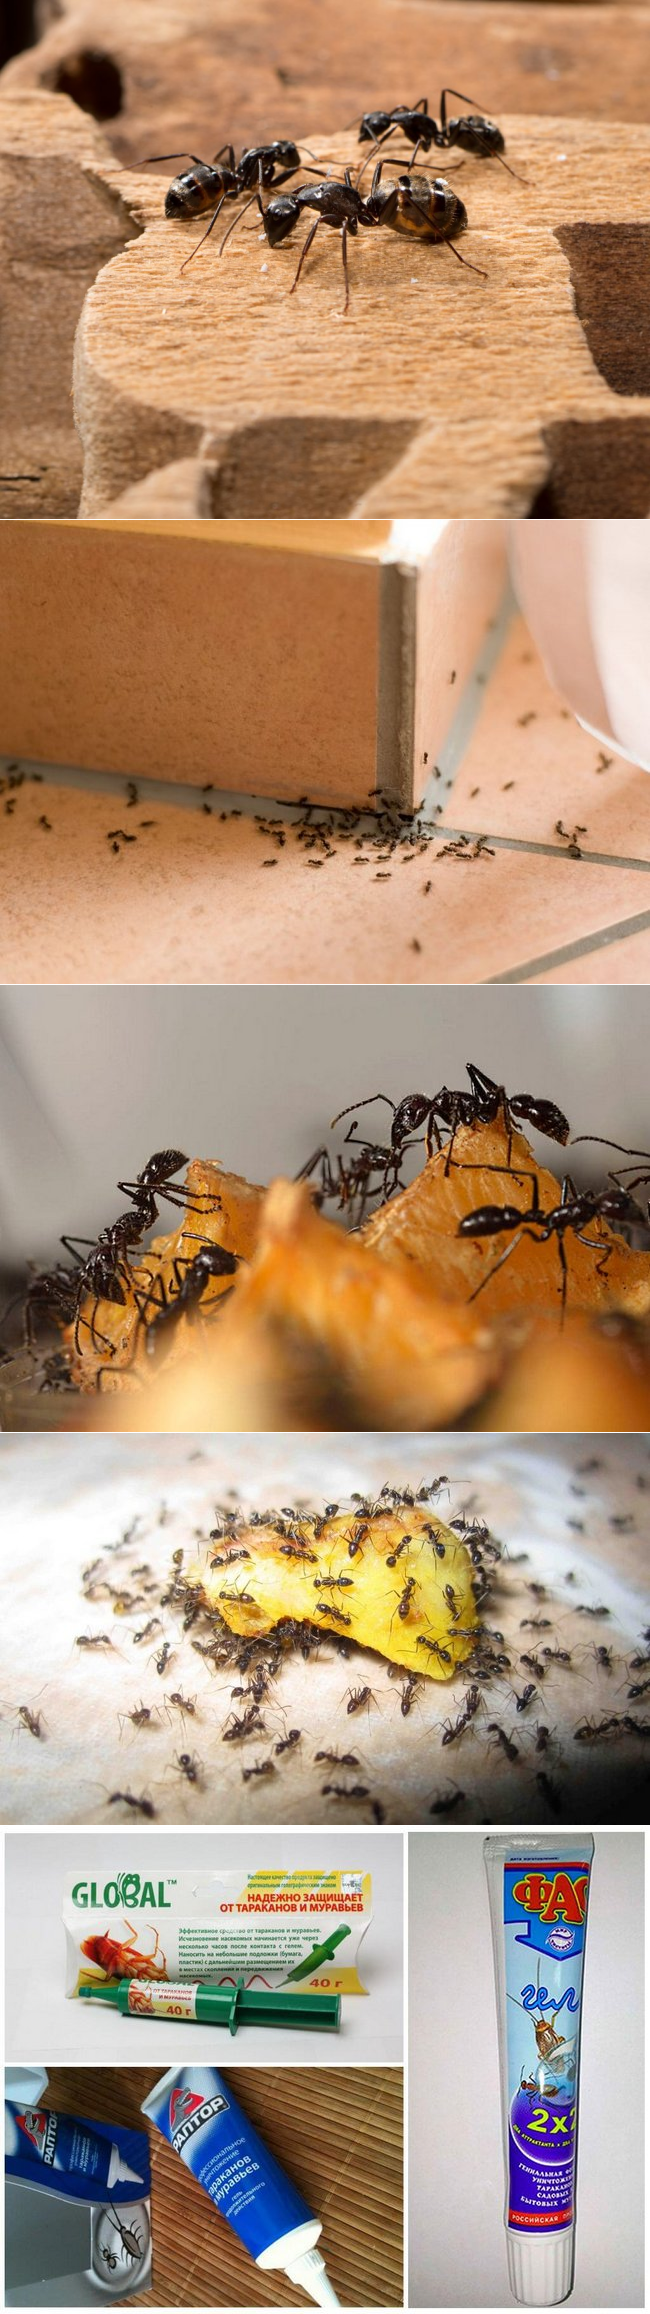 Как бороться с муравьями в квартире и огороде народными средствами и эффективными препаратами